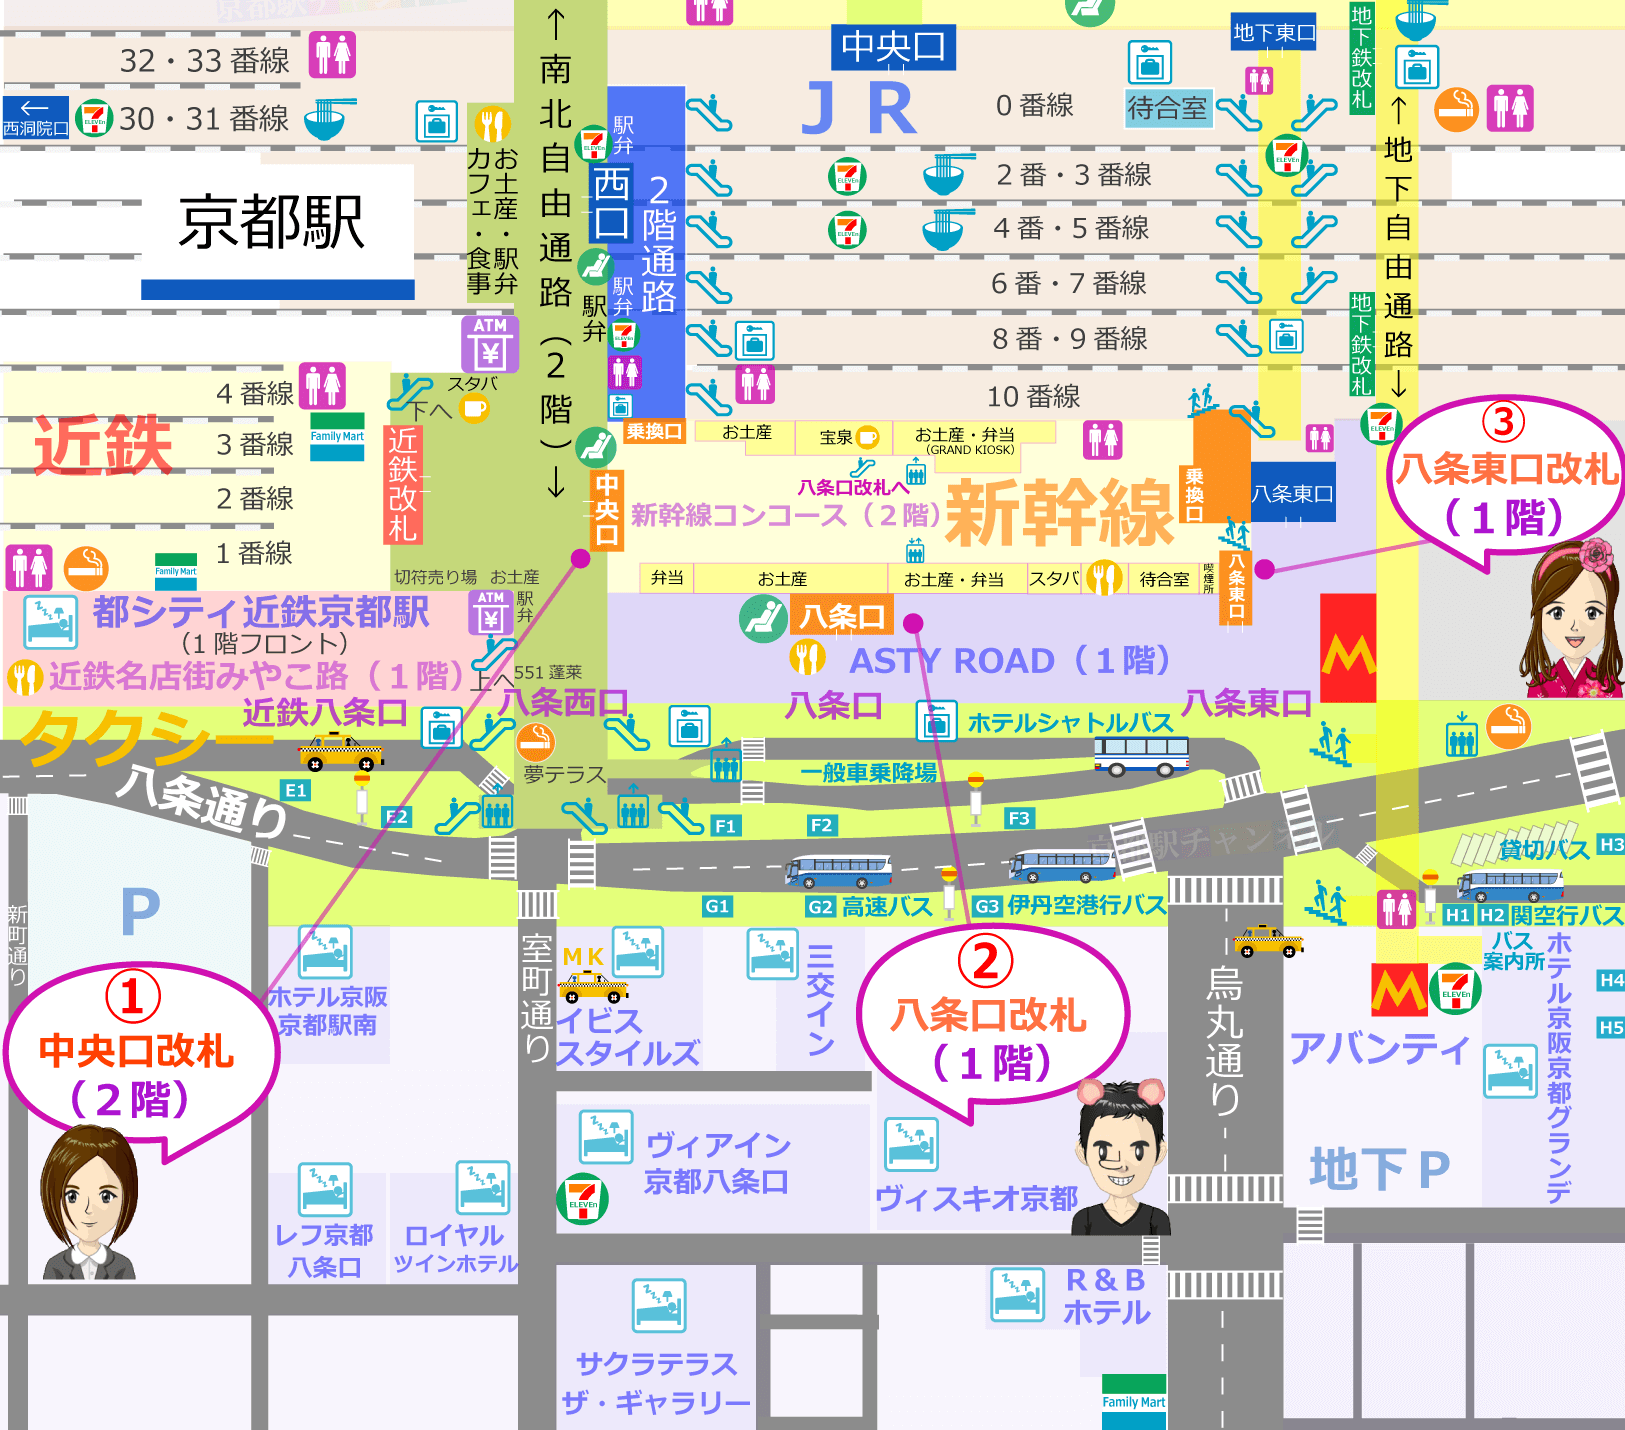 京都駅の八条口の構内図